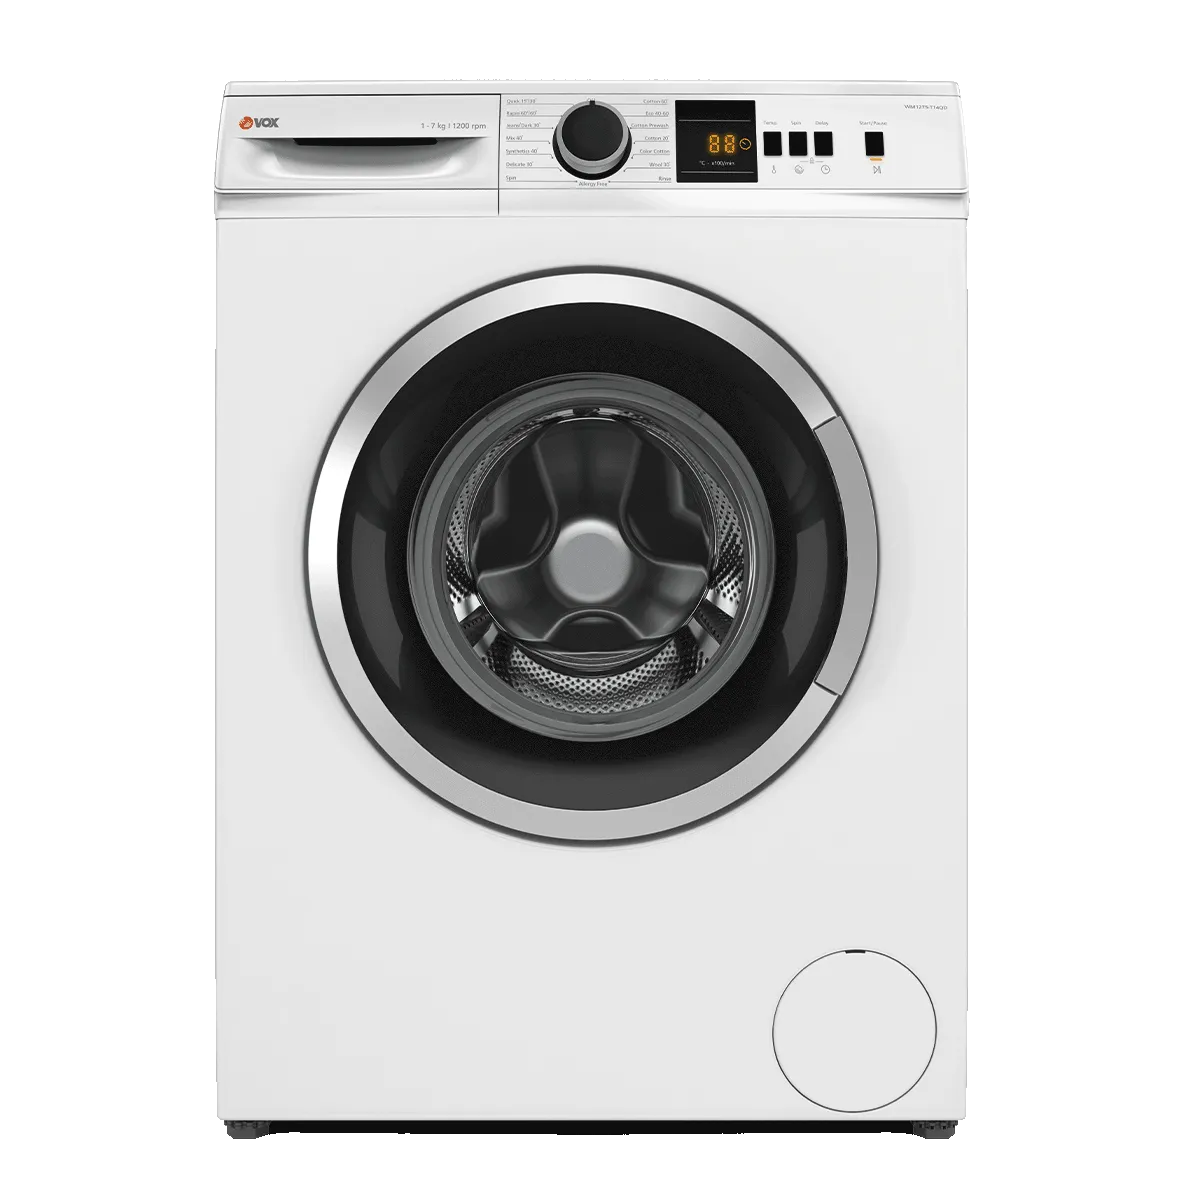 Washing machine WM1275-T14QD 